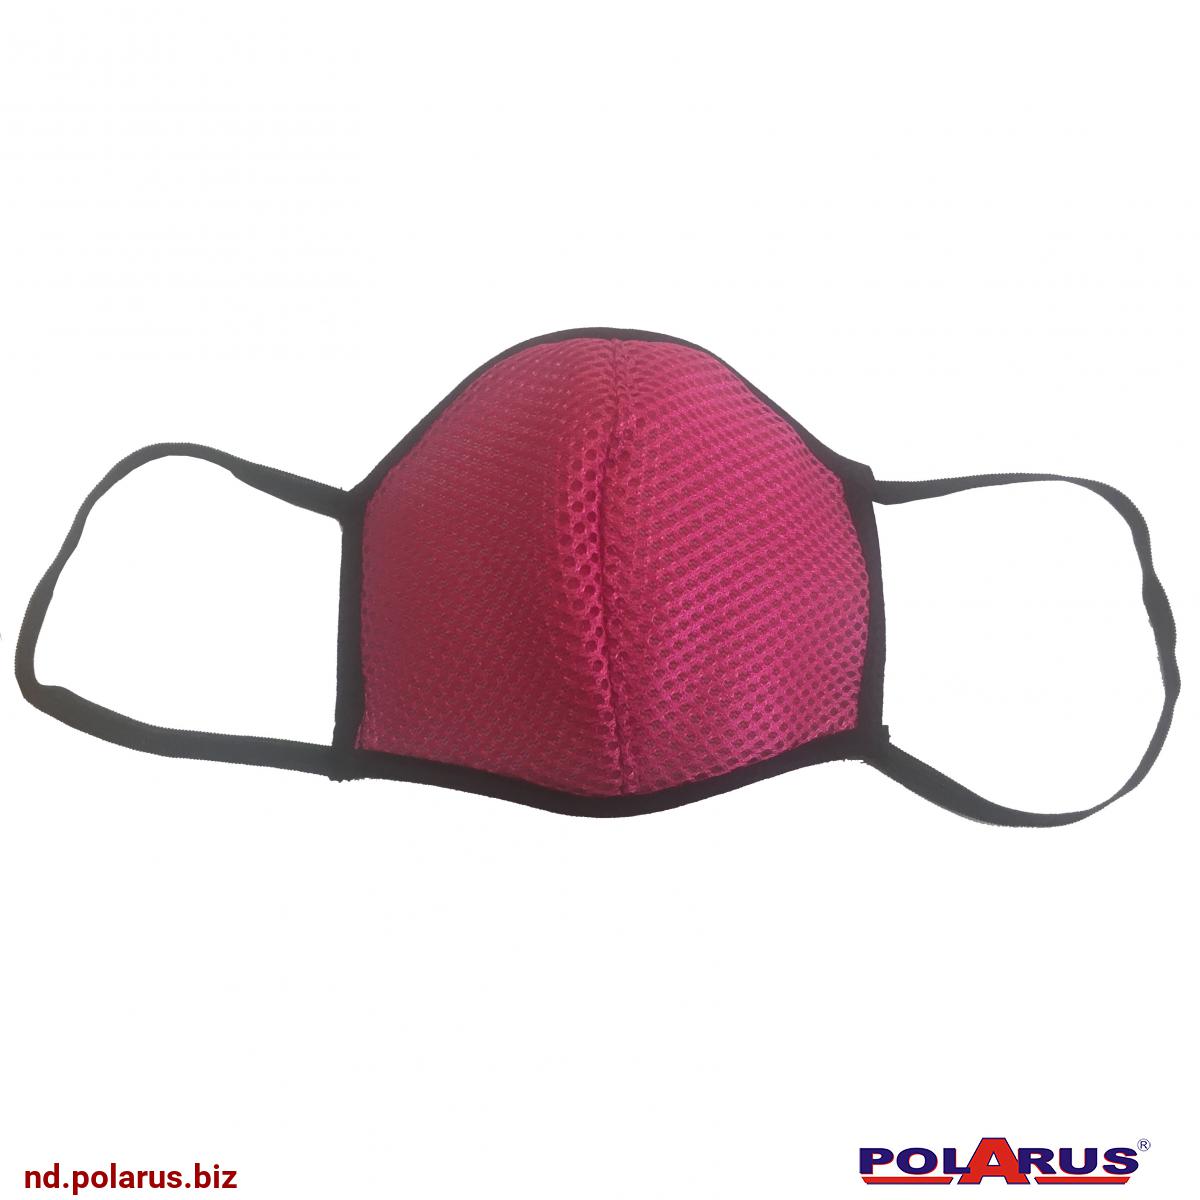 Маска защитная для маникюра (многоразовая) - розовая Предназначена для защиты дыхательных путей. Полностью закрывает рот, нос и нижнюю часть лица. Композитная - 3-ёх слойное исполнение 3D-полиэстер + 2 слоя спанбонда